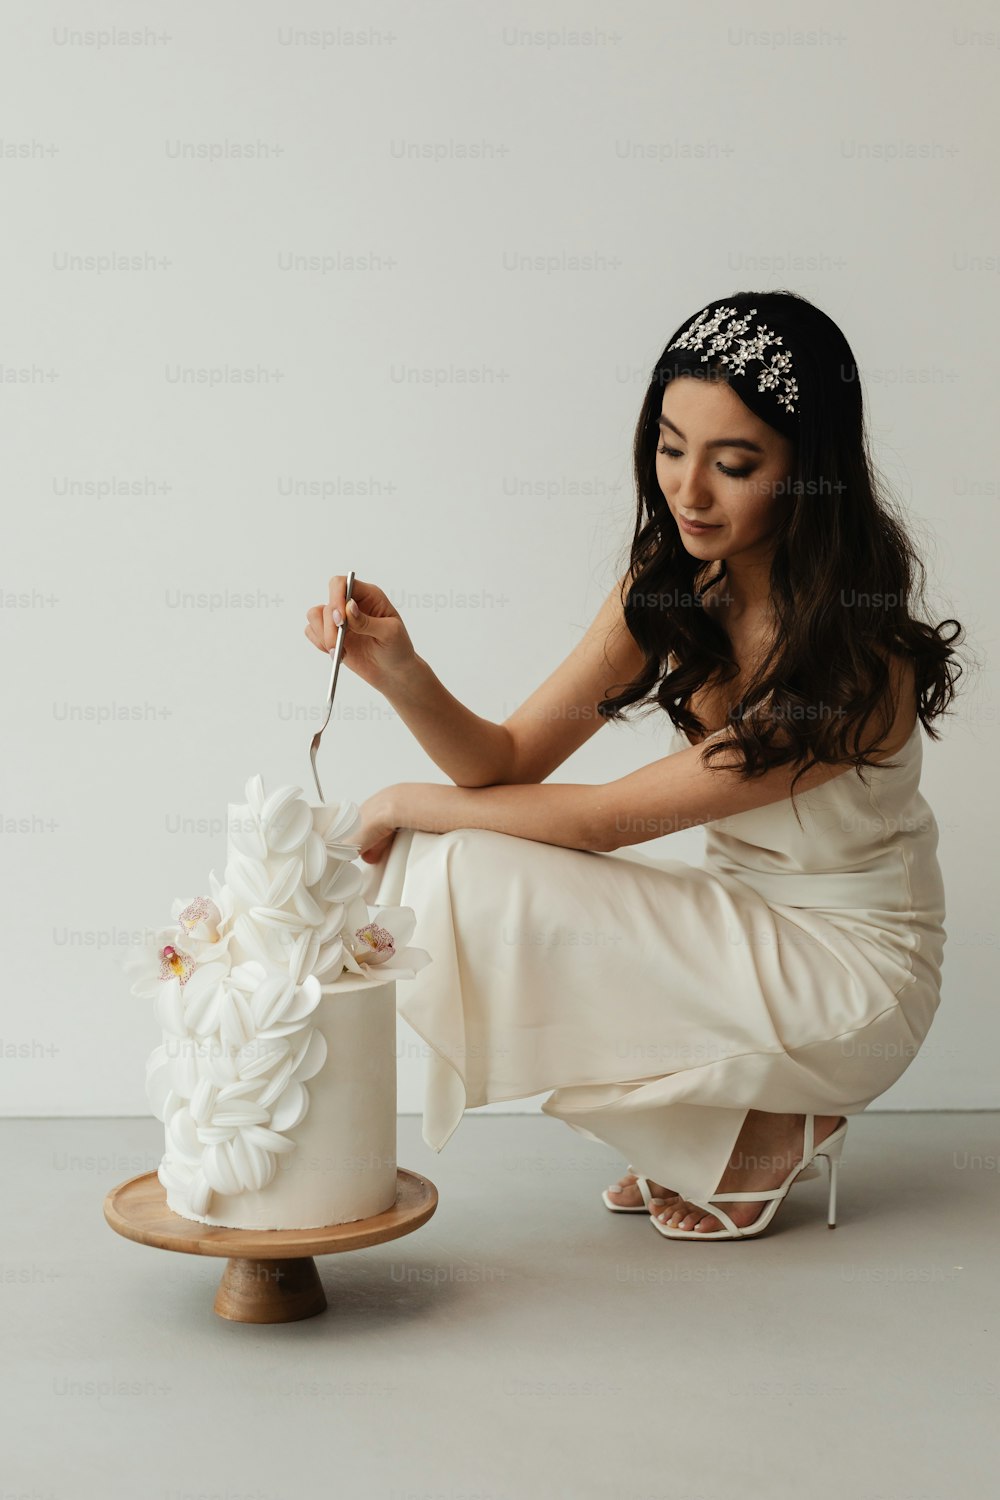 Une femme en robe blanche coupant un gâteau de mariage